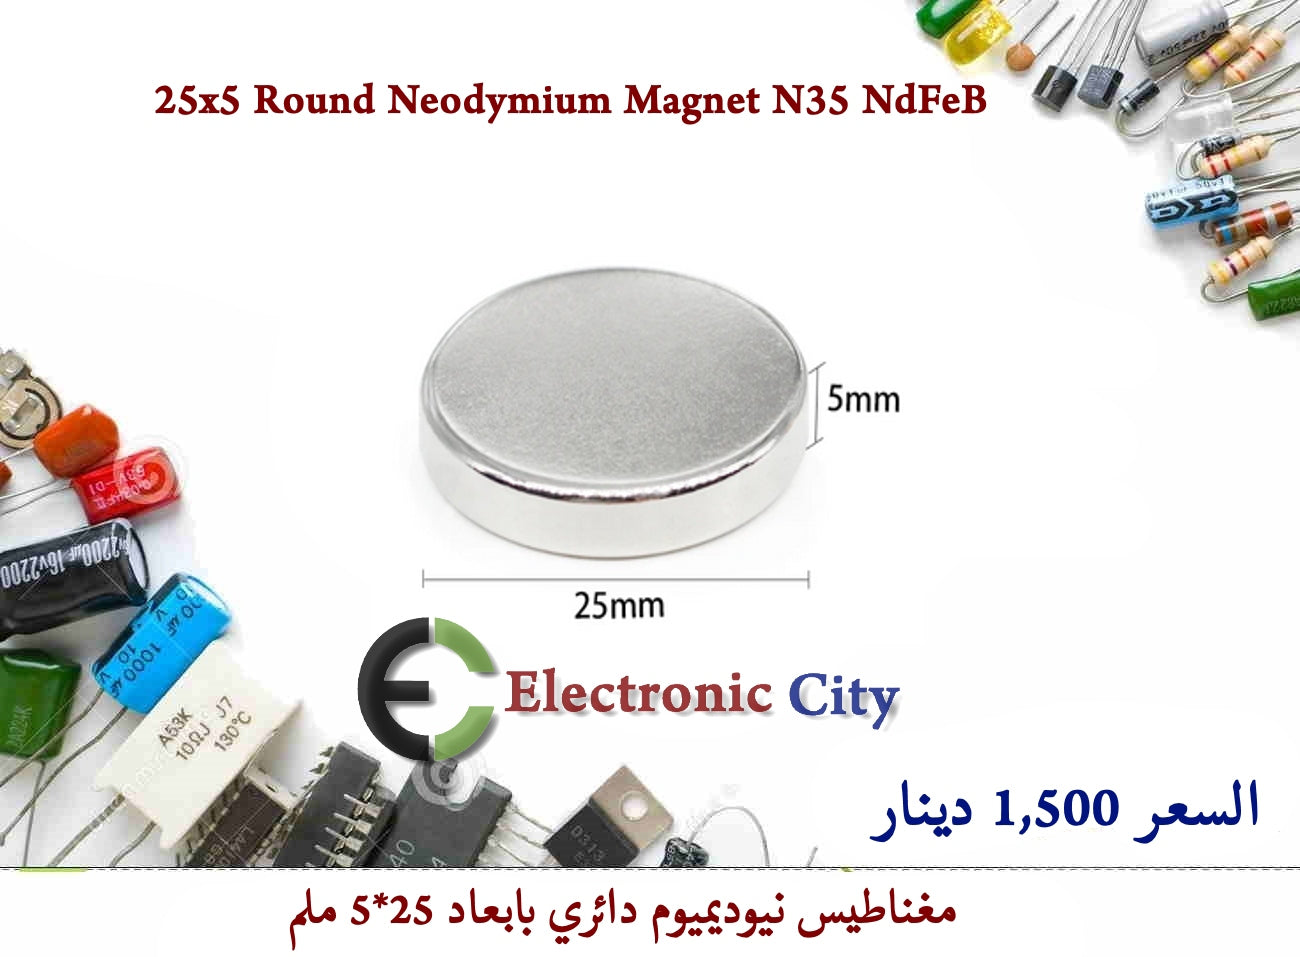 25x5 Round Neodymium Magnet N35 NdFeB